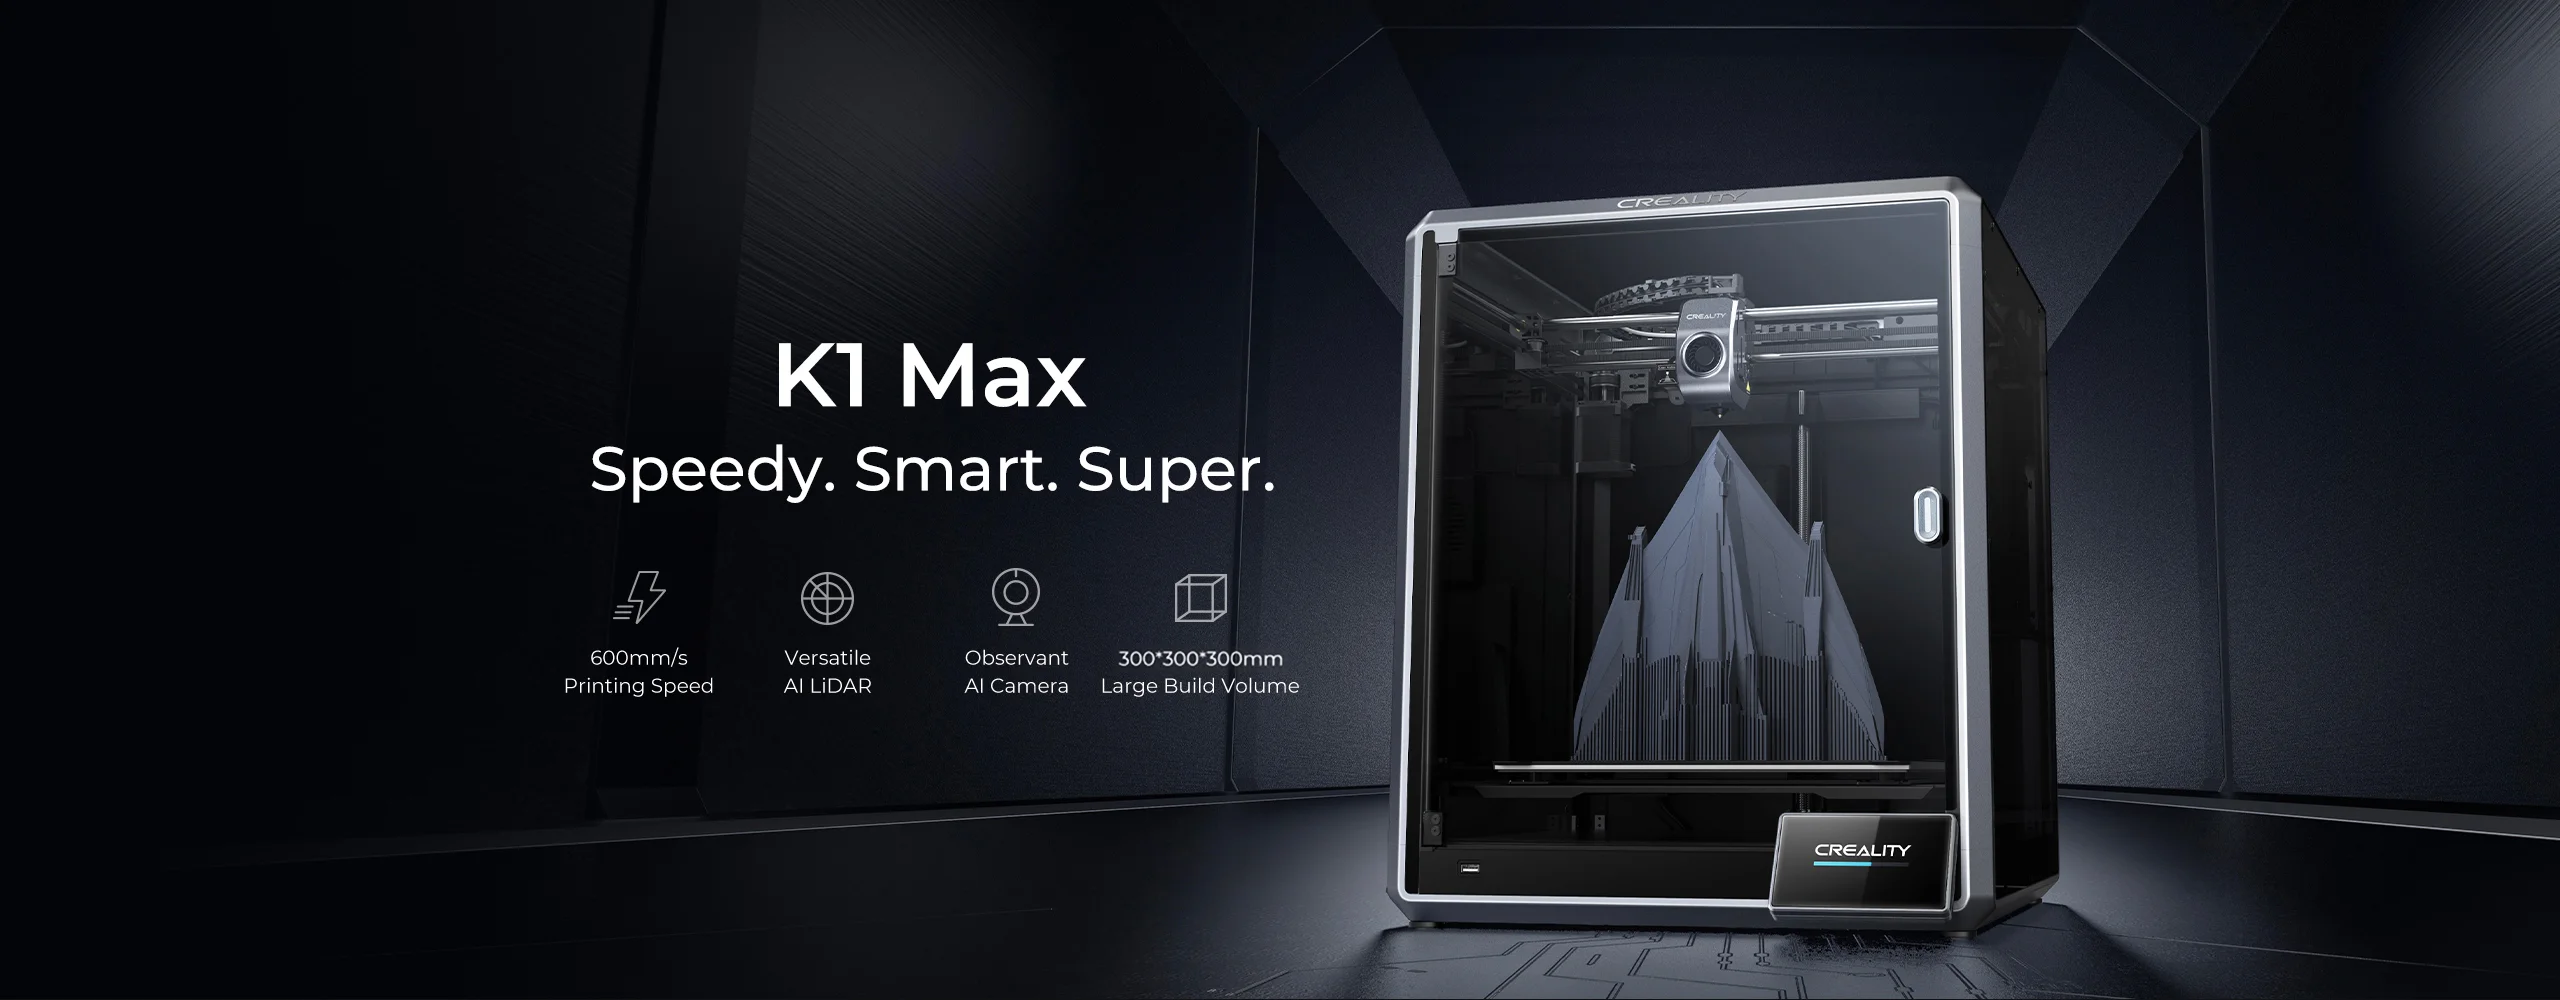 Creality K1 Max FDM 3D-Drucker 600mm/s Hochgeschwindigkeit